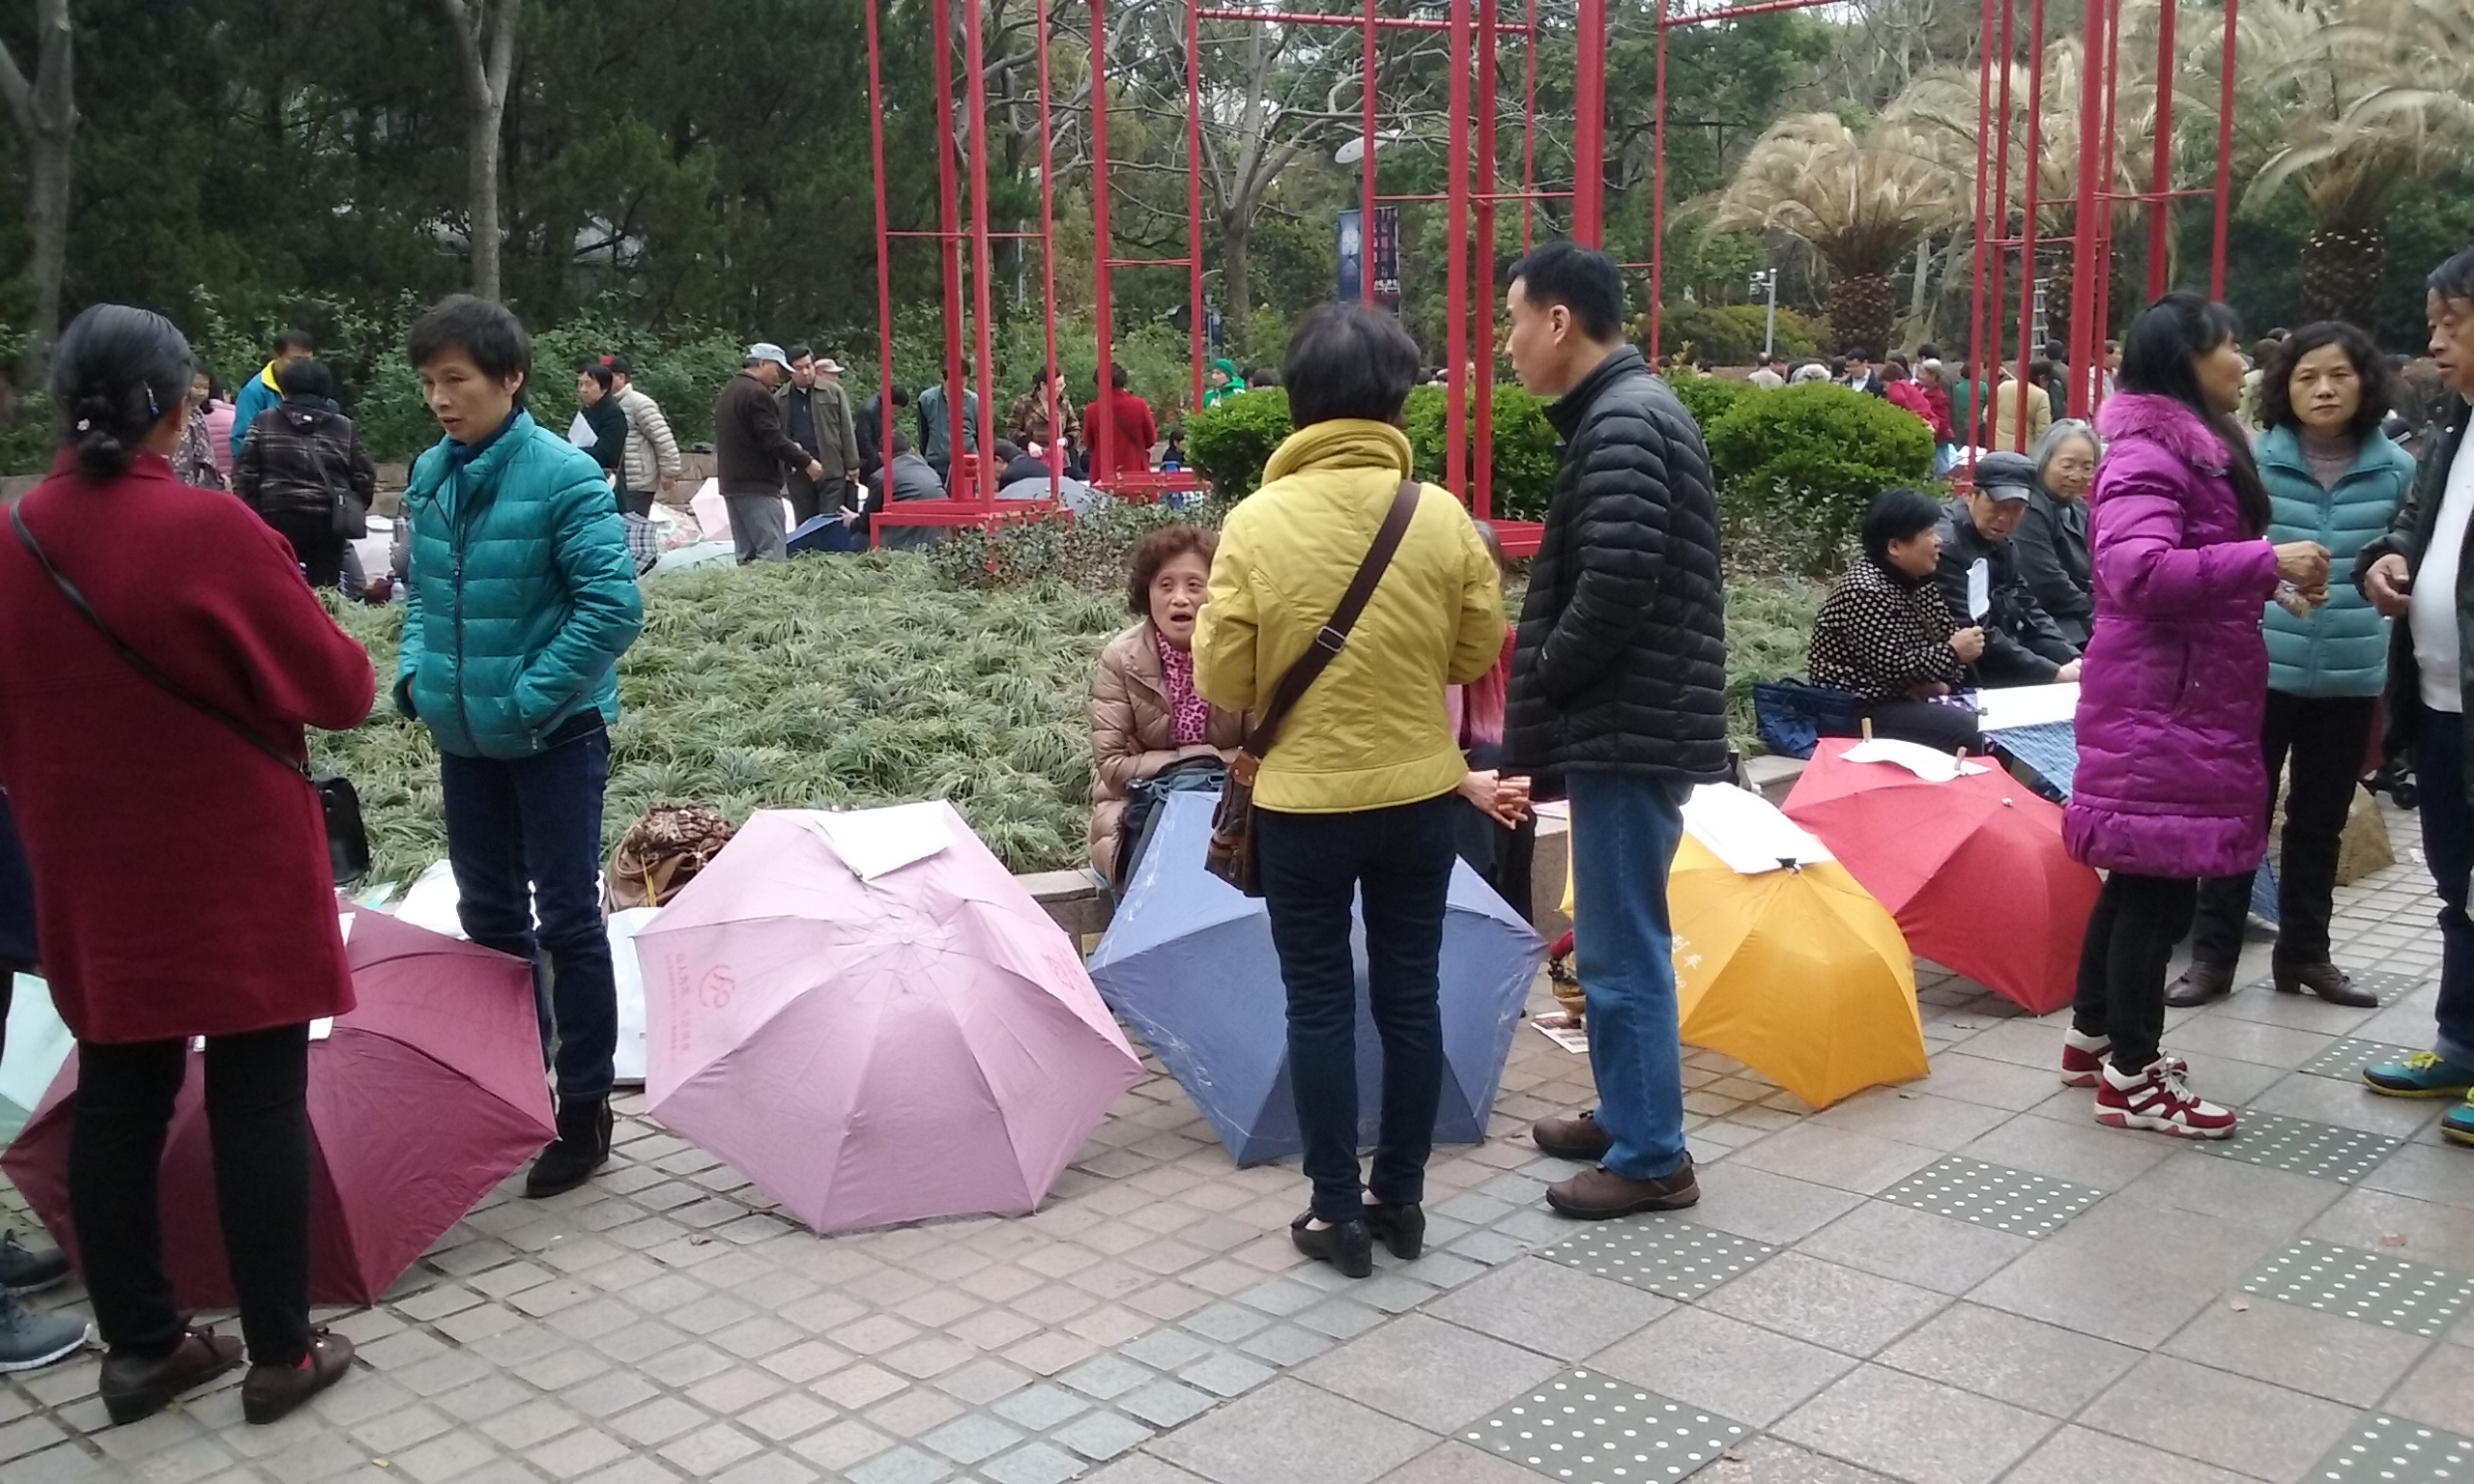 2182 Umbrellas